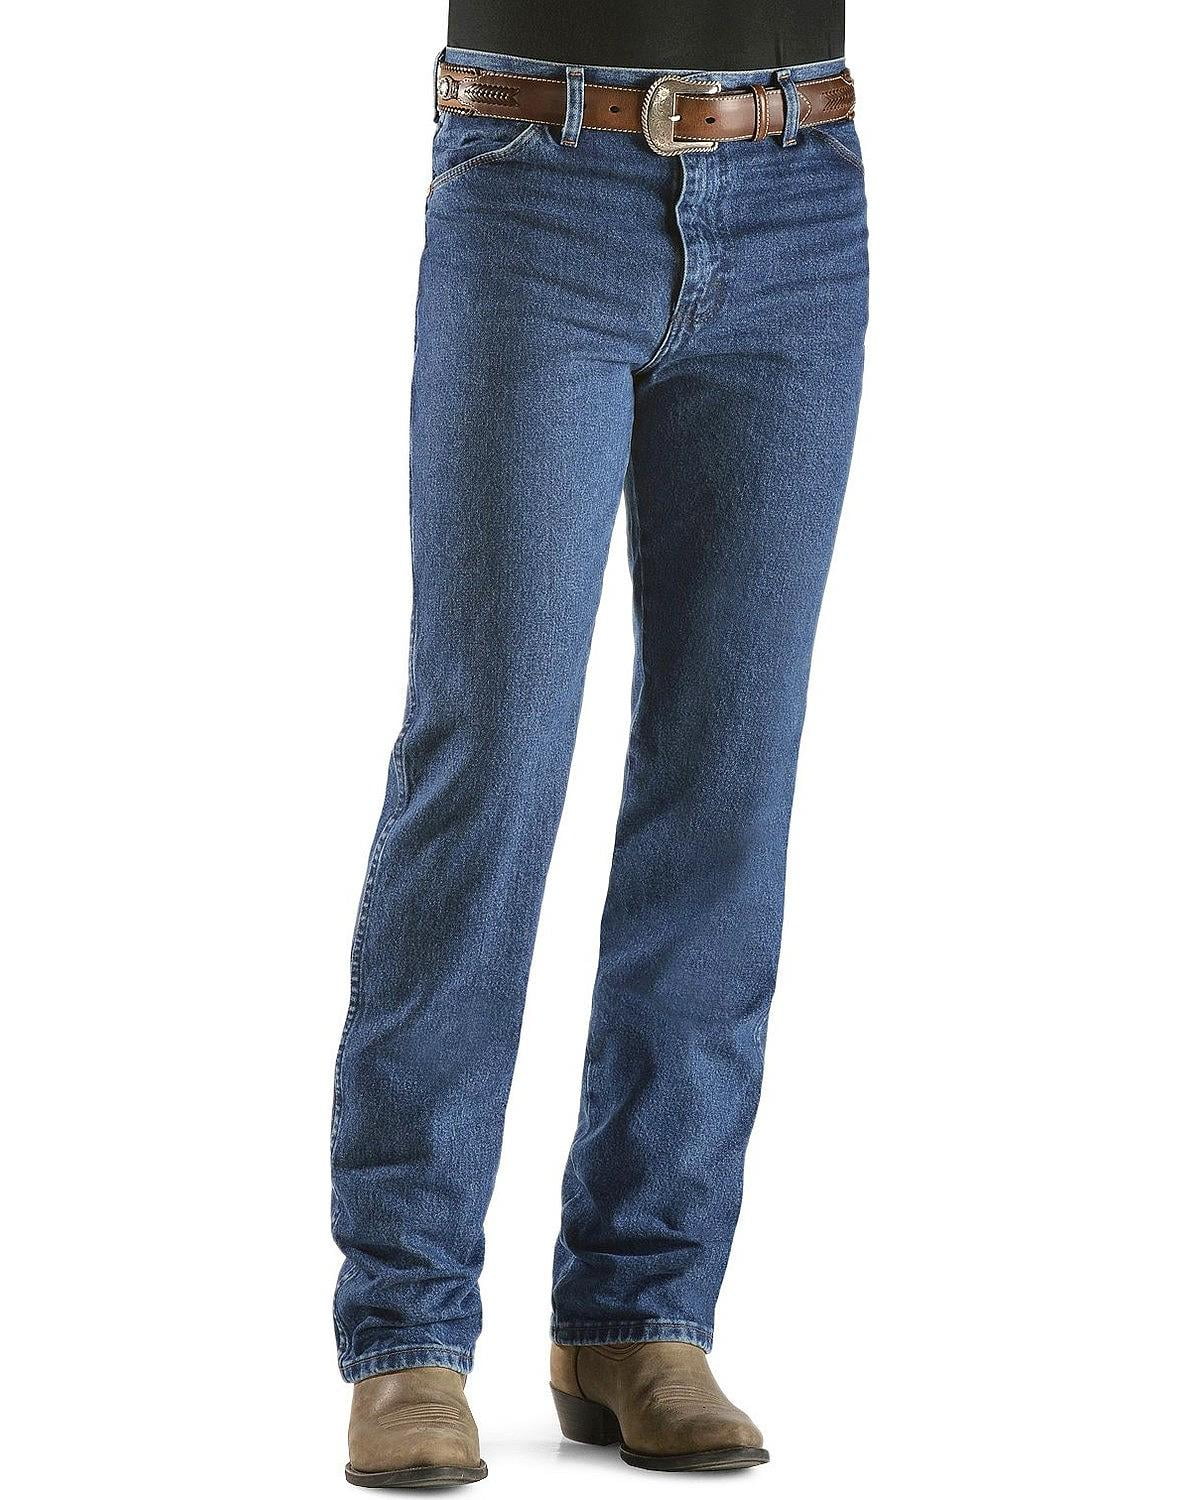 wrangler 936 jeans